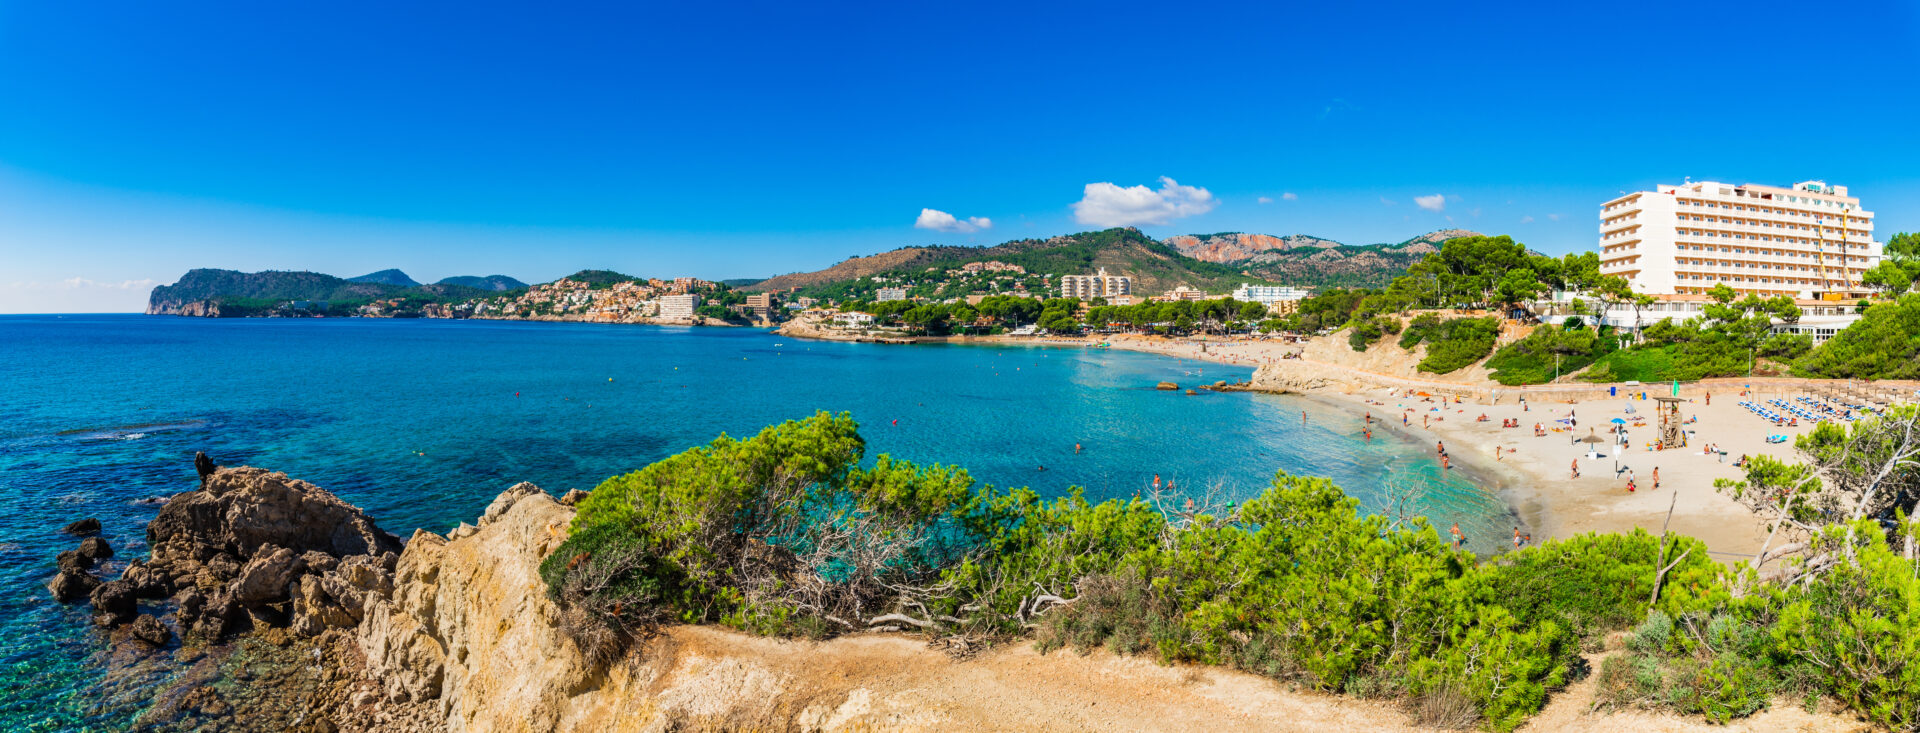 Schöne Orte auf Mallorca